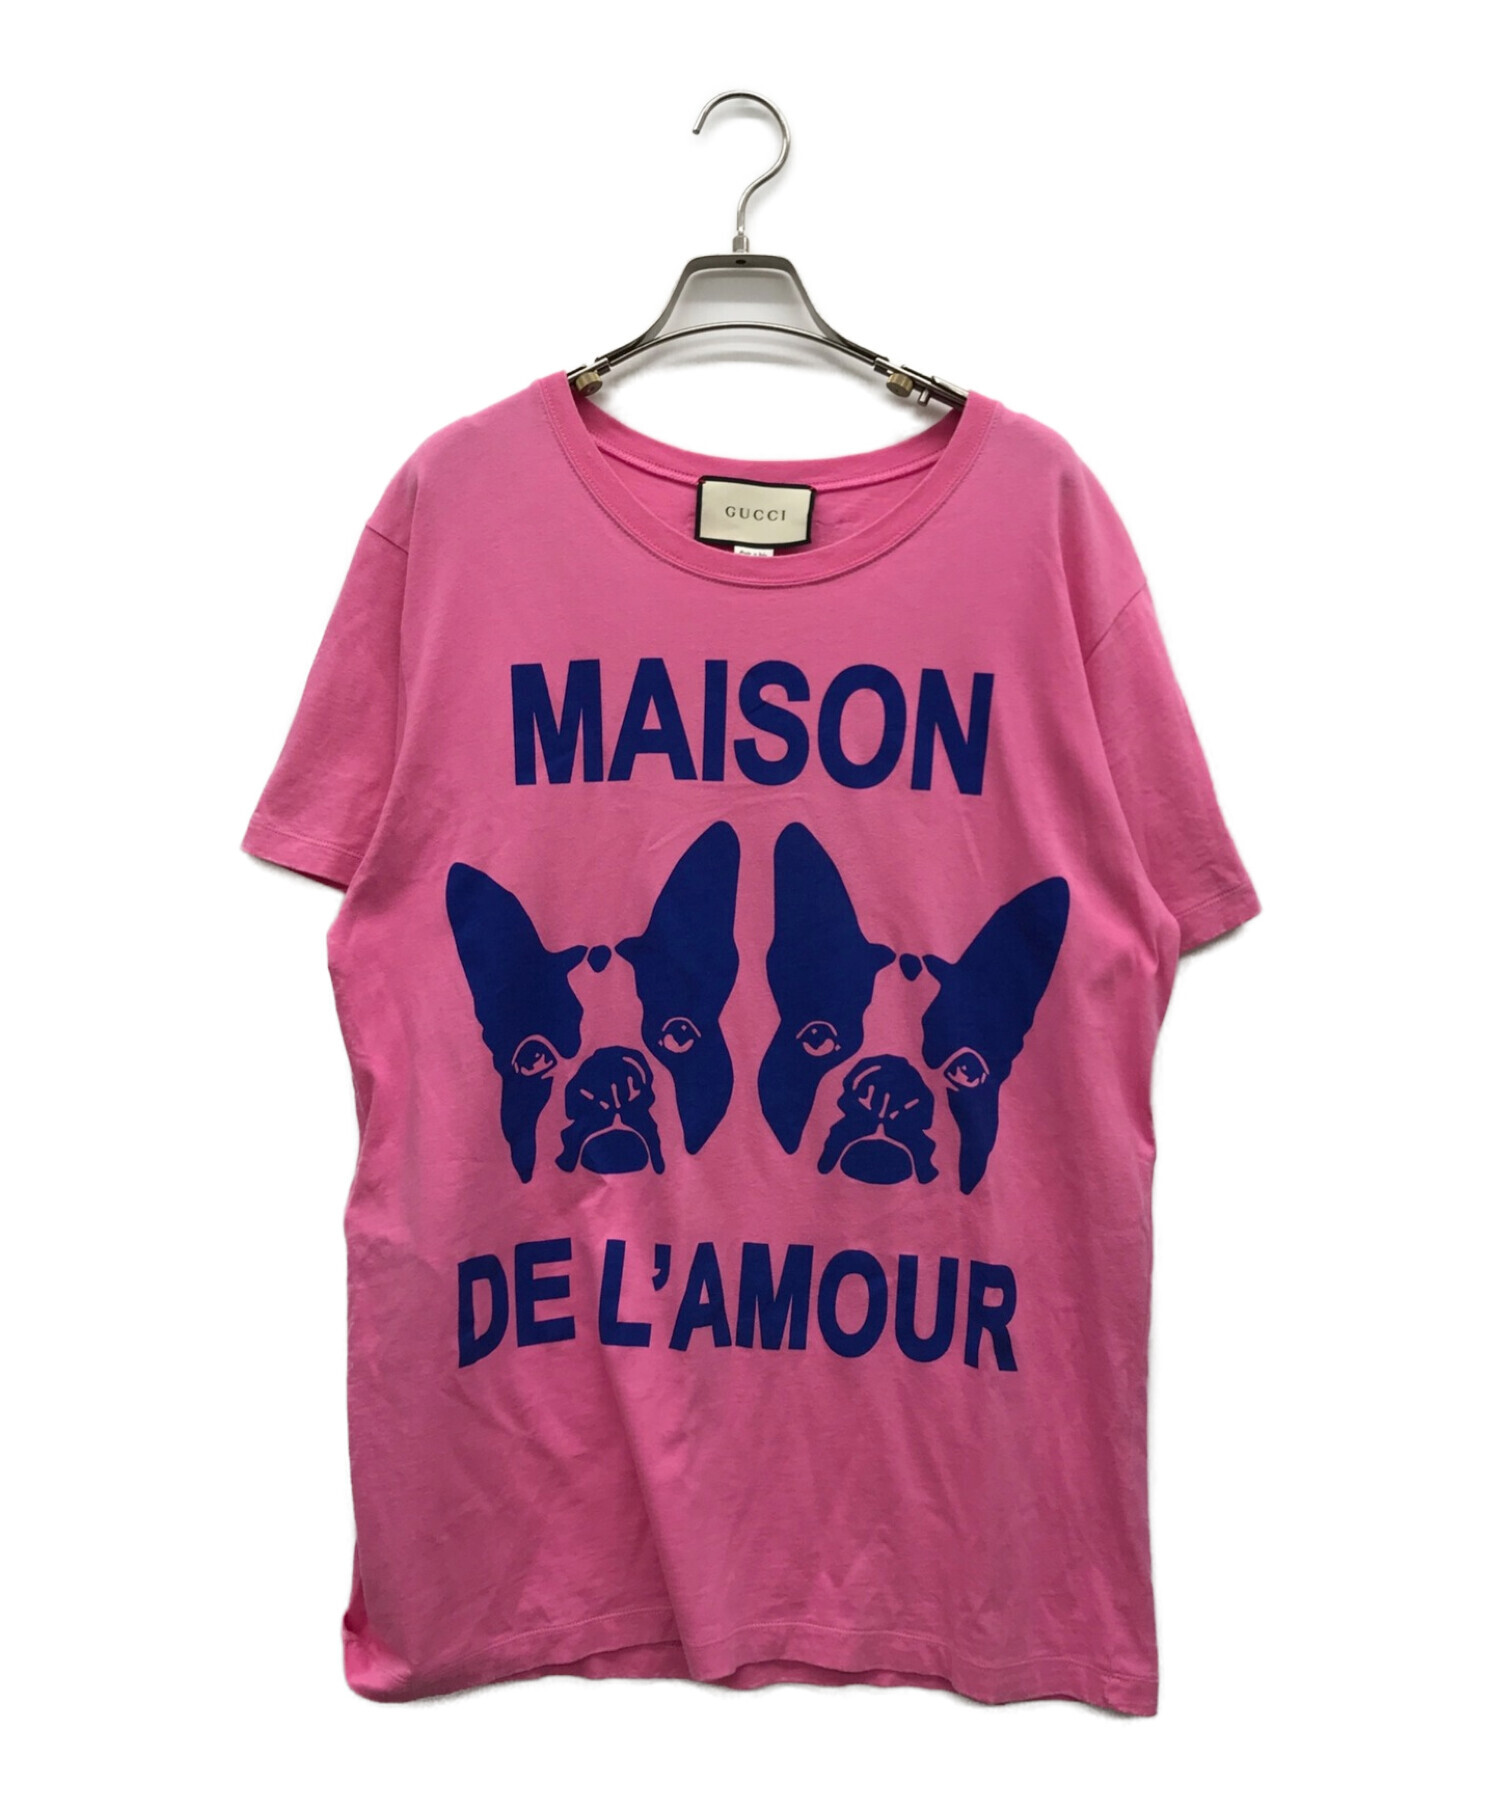 GUCCI (グッチ) バックロゴスパンコール装飾ドッグプリントTシャツ ピンク サイズ:M